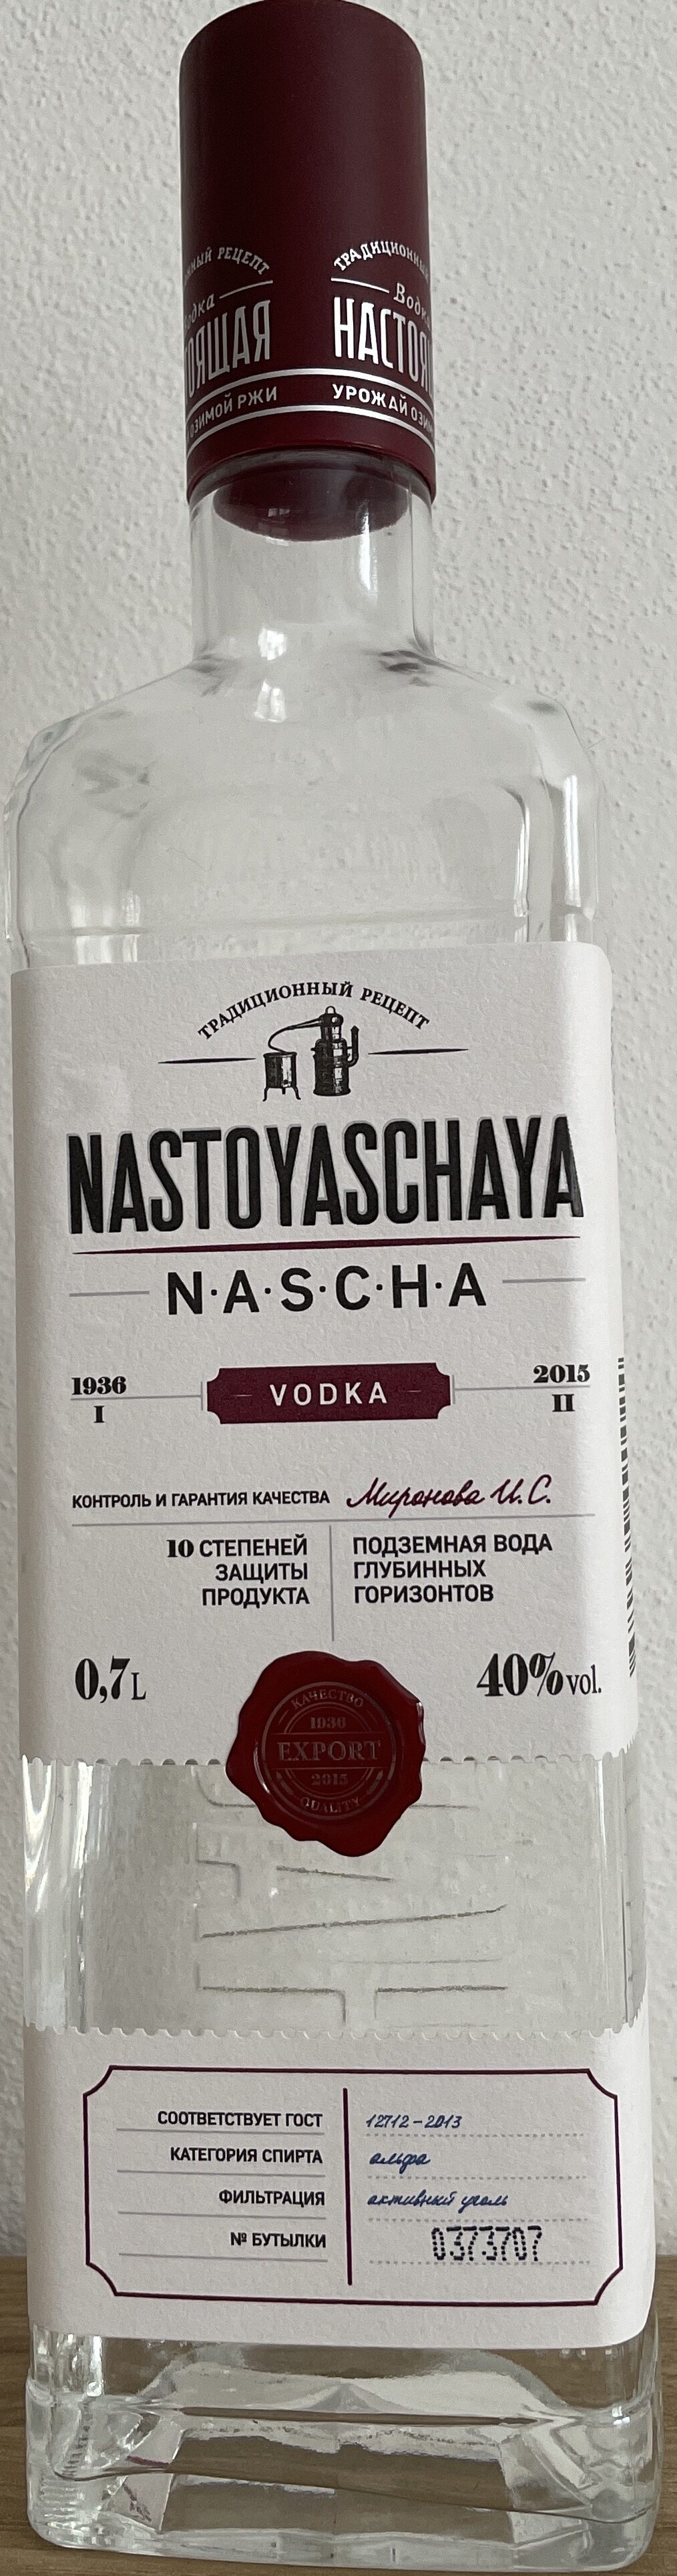 Nastoyaschaya Vodka - Produkt